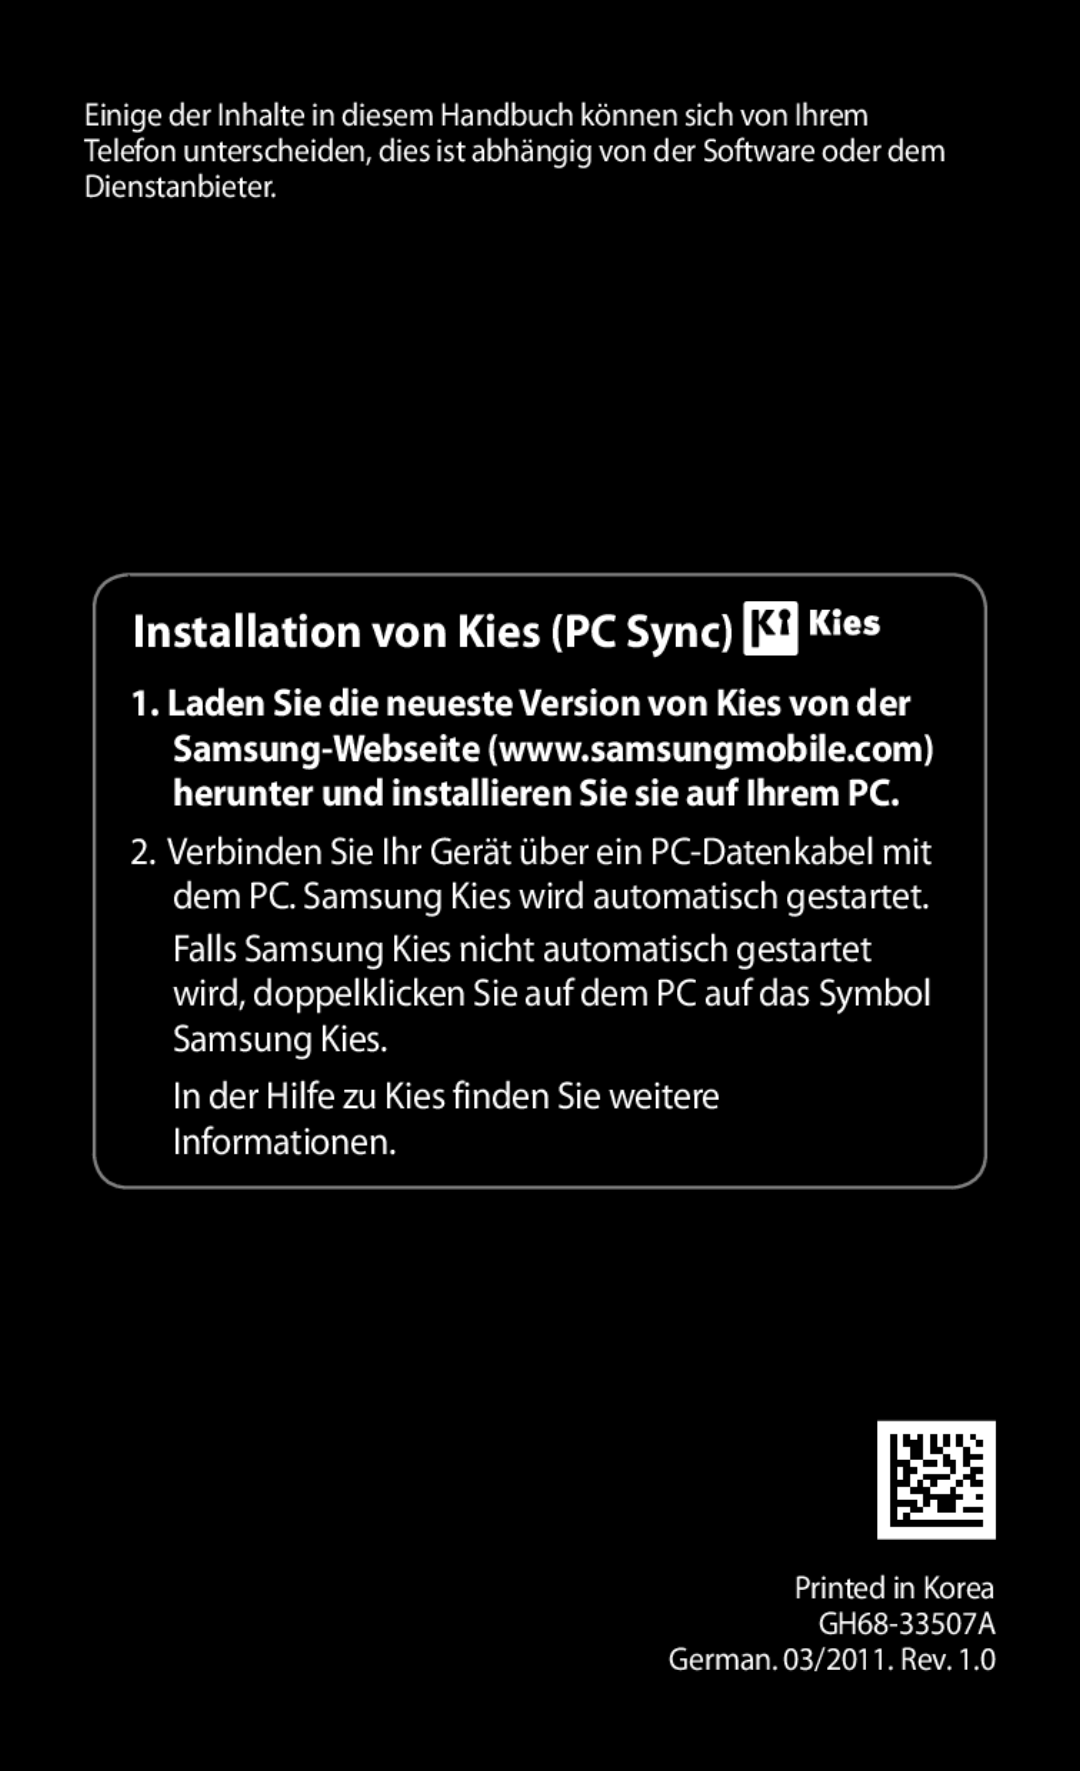 Samsung GT-S5830RWAEPL manual Installation von Kies PC Sync, In der Hilfe zu Kies finden Sie weitere Informationen 